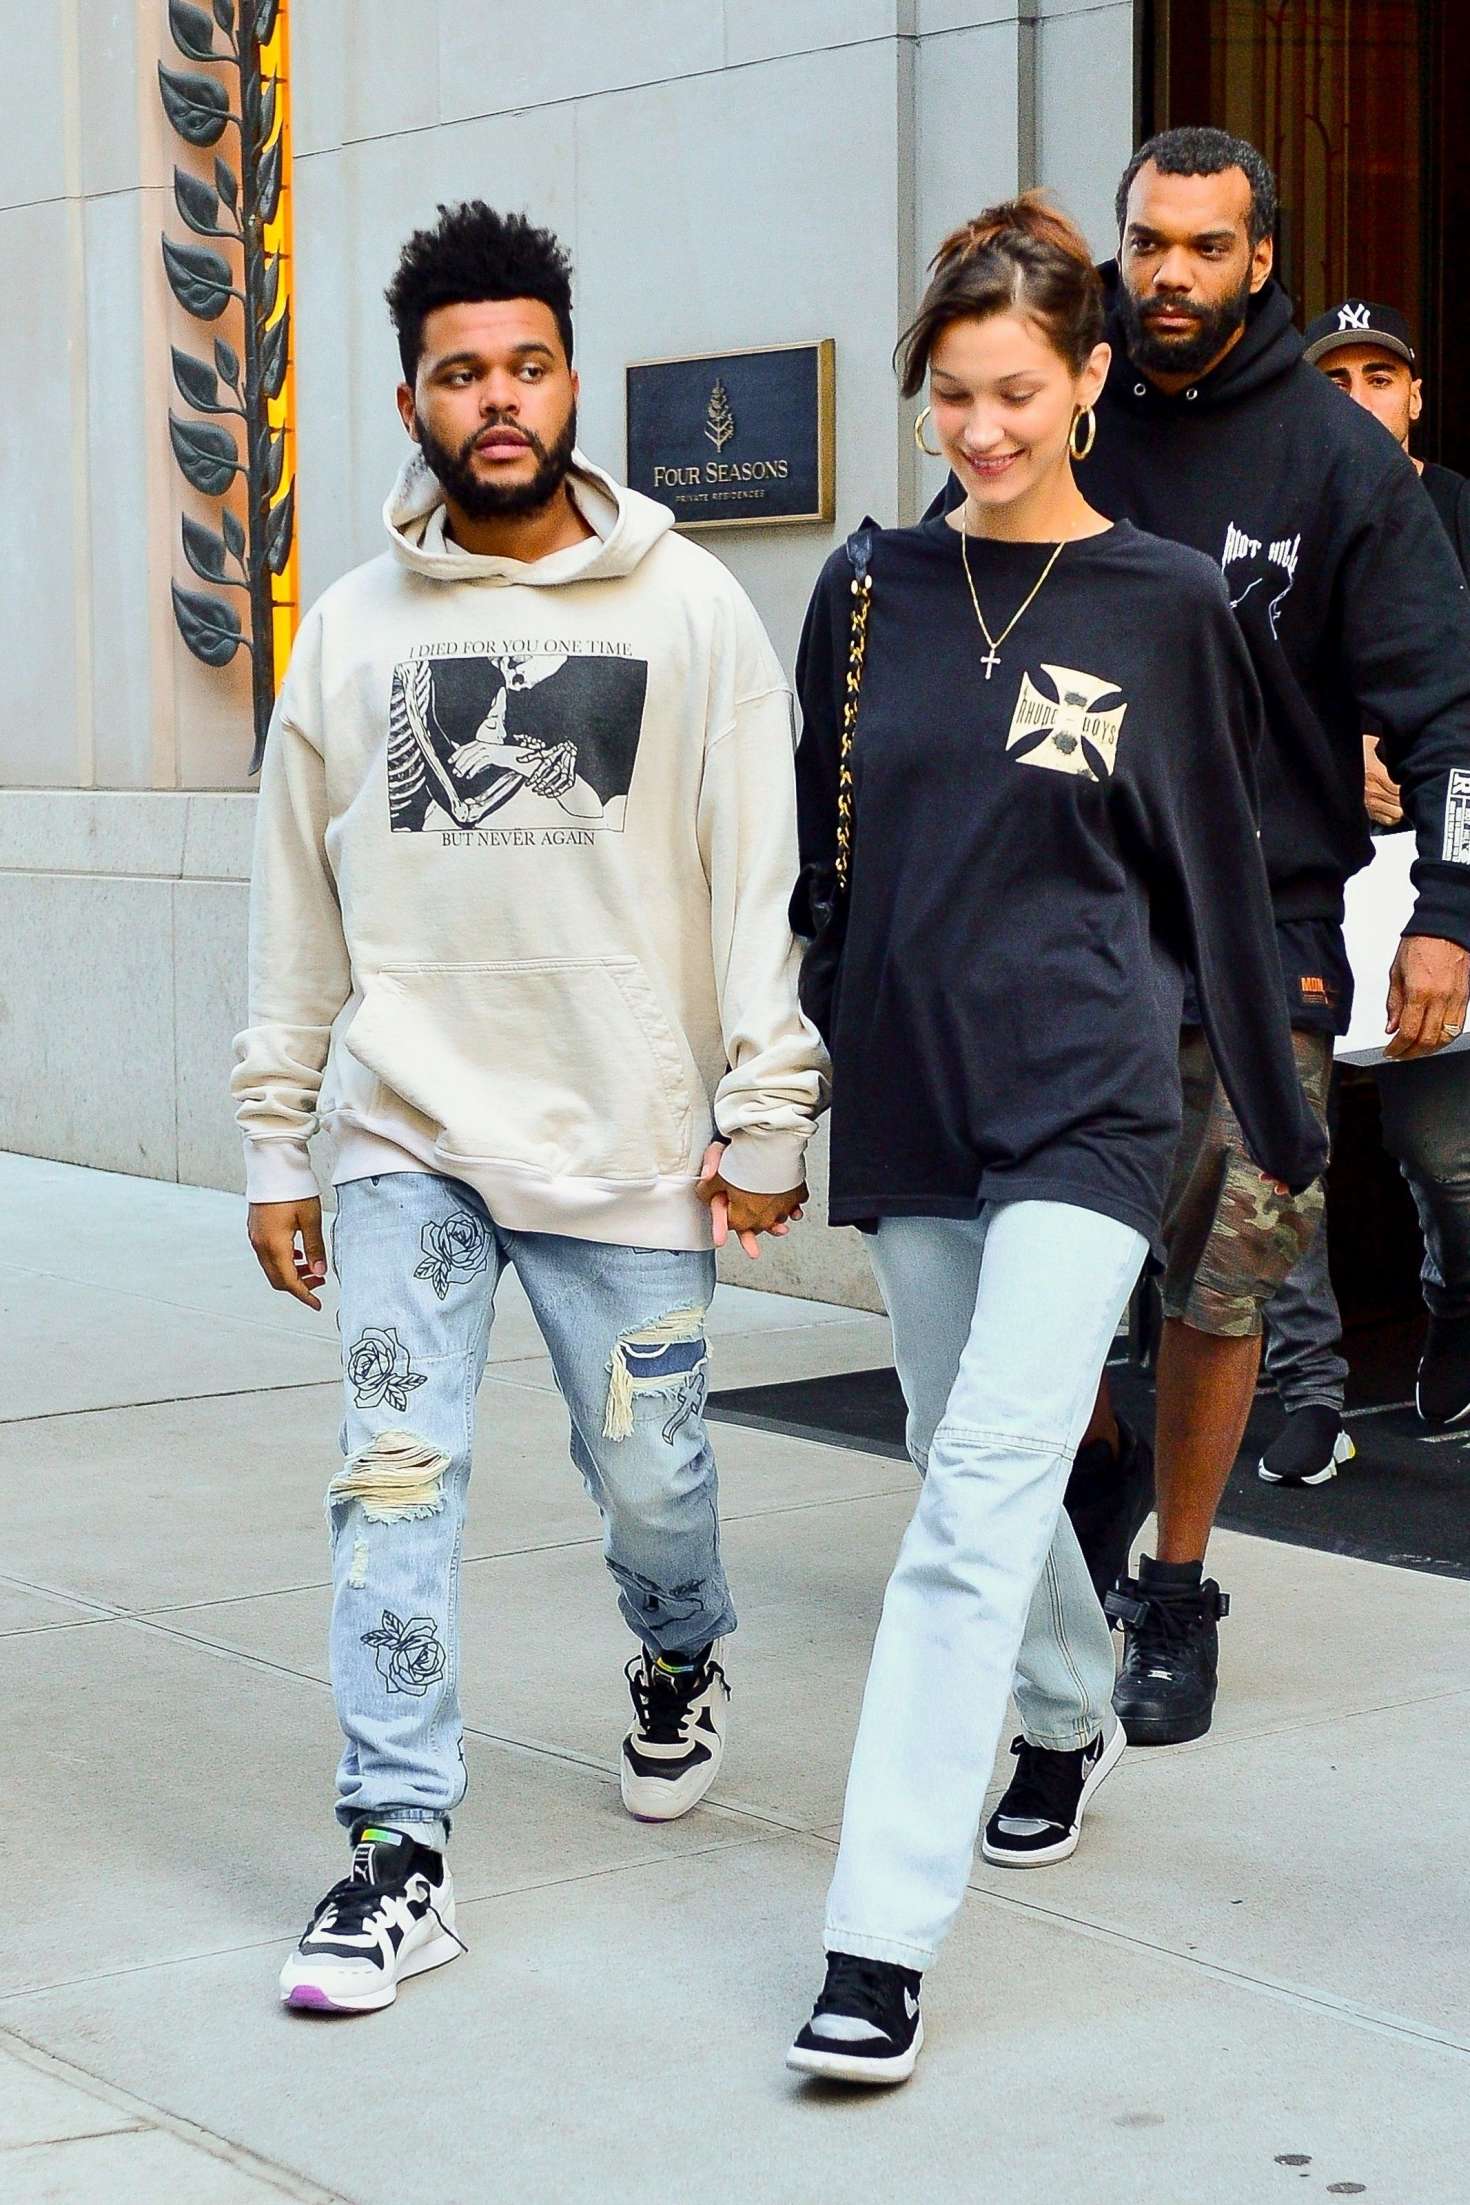 Dù chỉ đơn giản khi xuống phố, cả Bella và The Weeknd đều tạo sức hút bởi sự đồng điệu trong cách ăn mặc. Áo nỉ + quần jeans + sneakers cho ngày lạnh hẹn hò, đơn giản mà sành điệu.